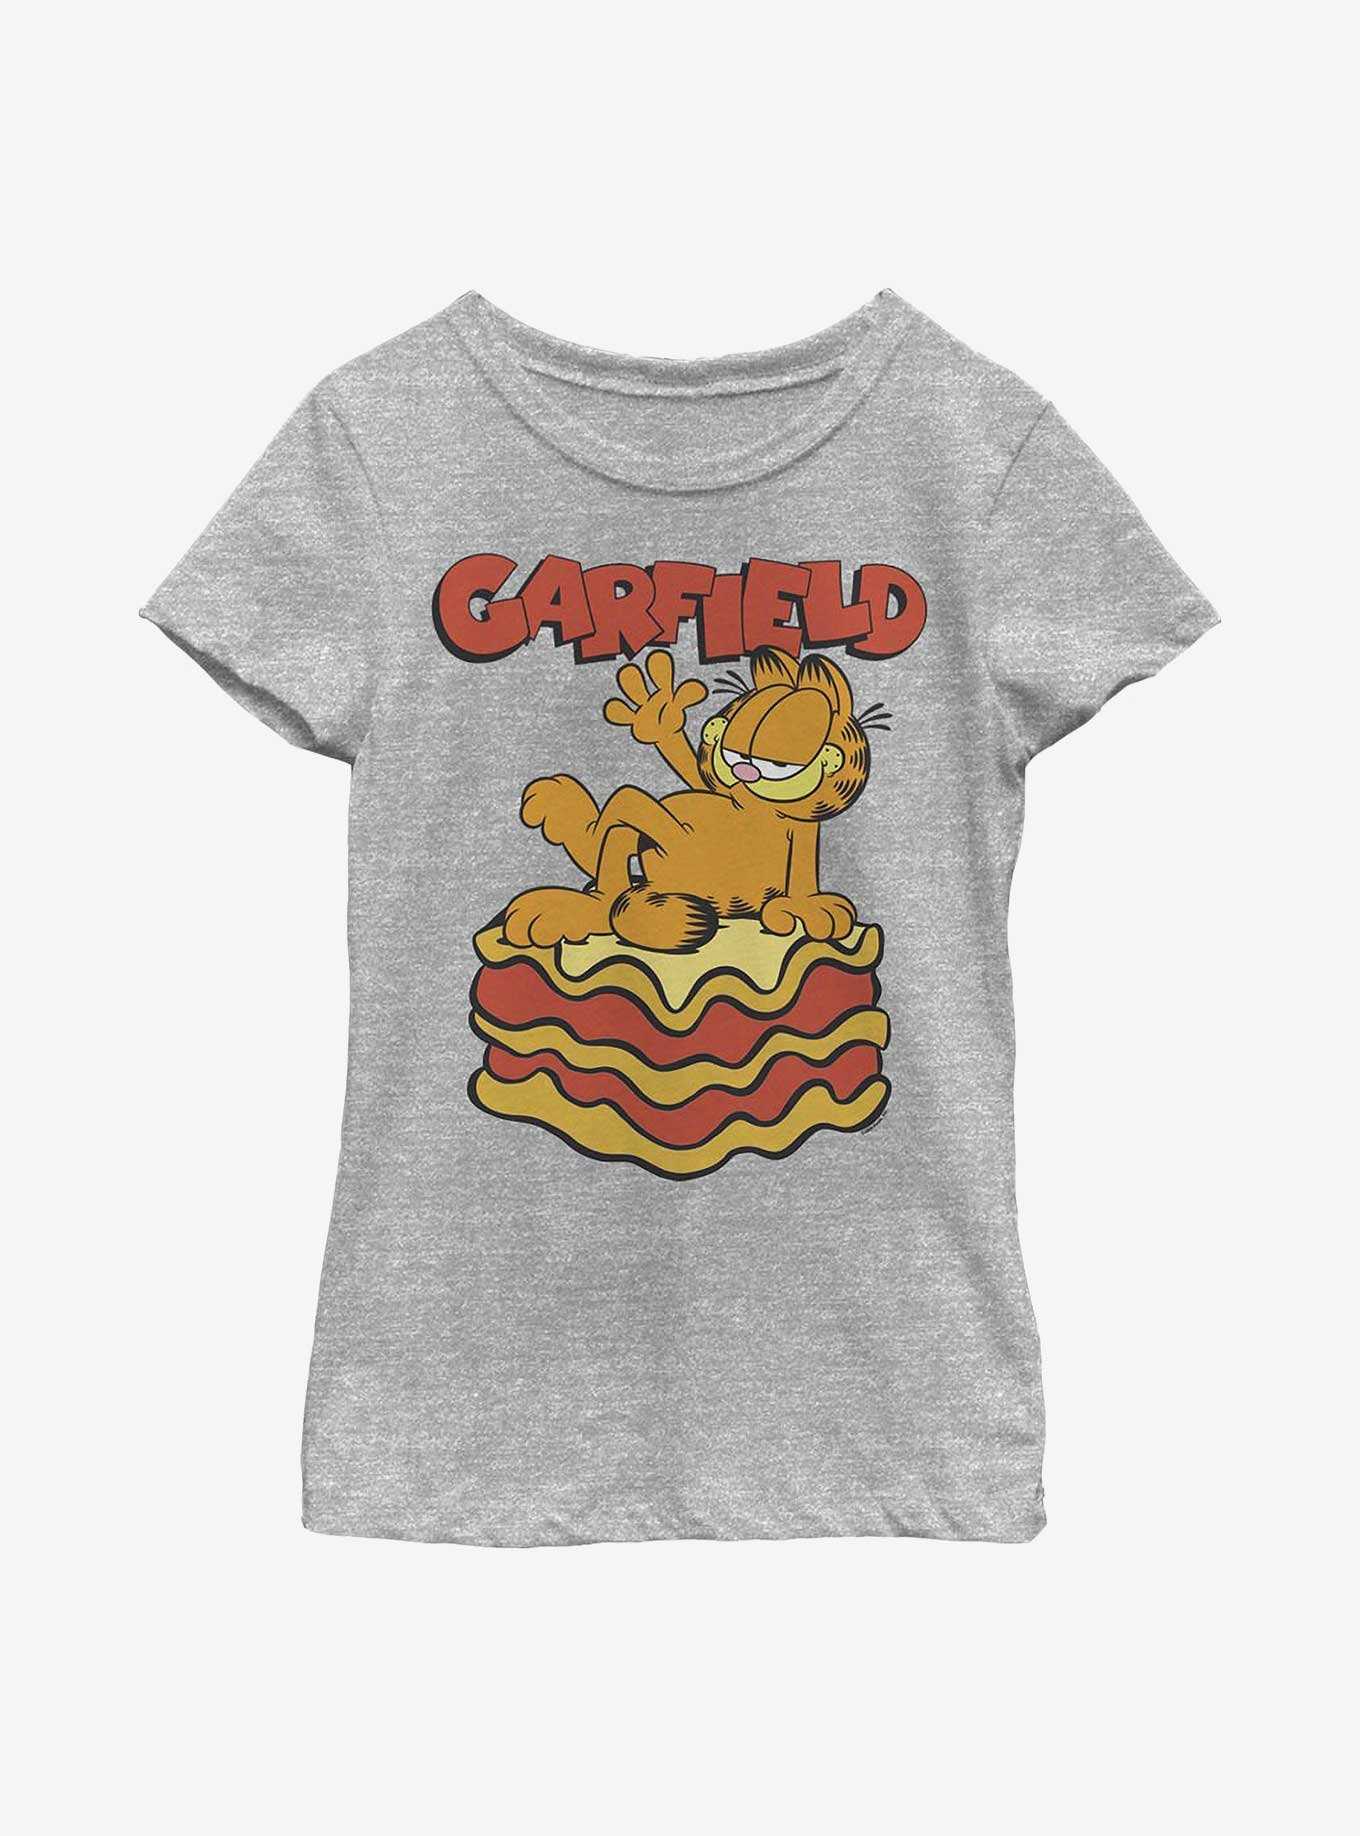 Garfield King Of Lasagna Youth Girl's T-Shirt, , hi-res